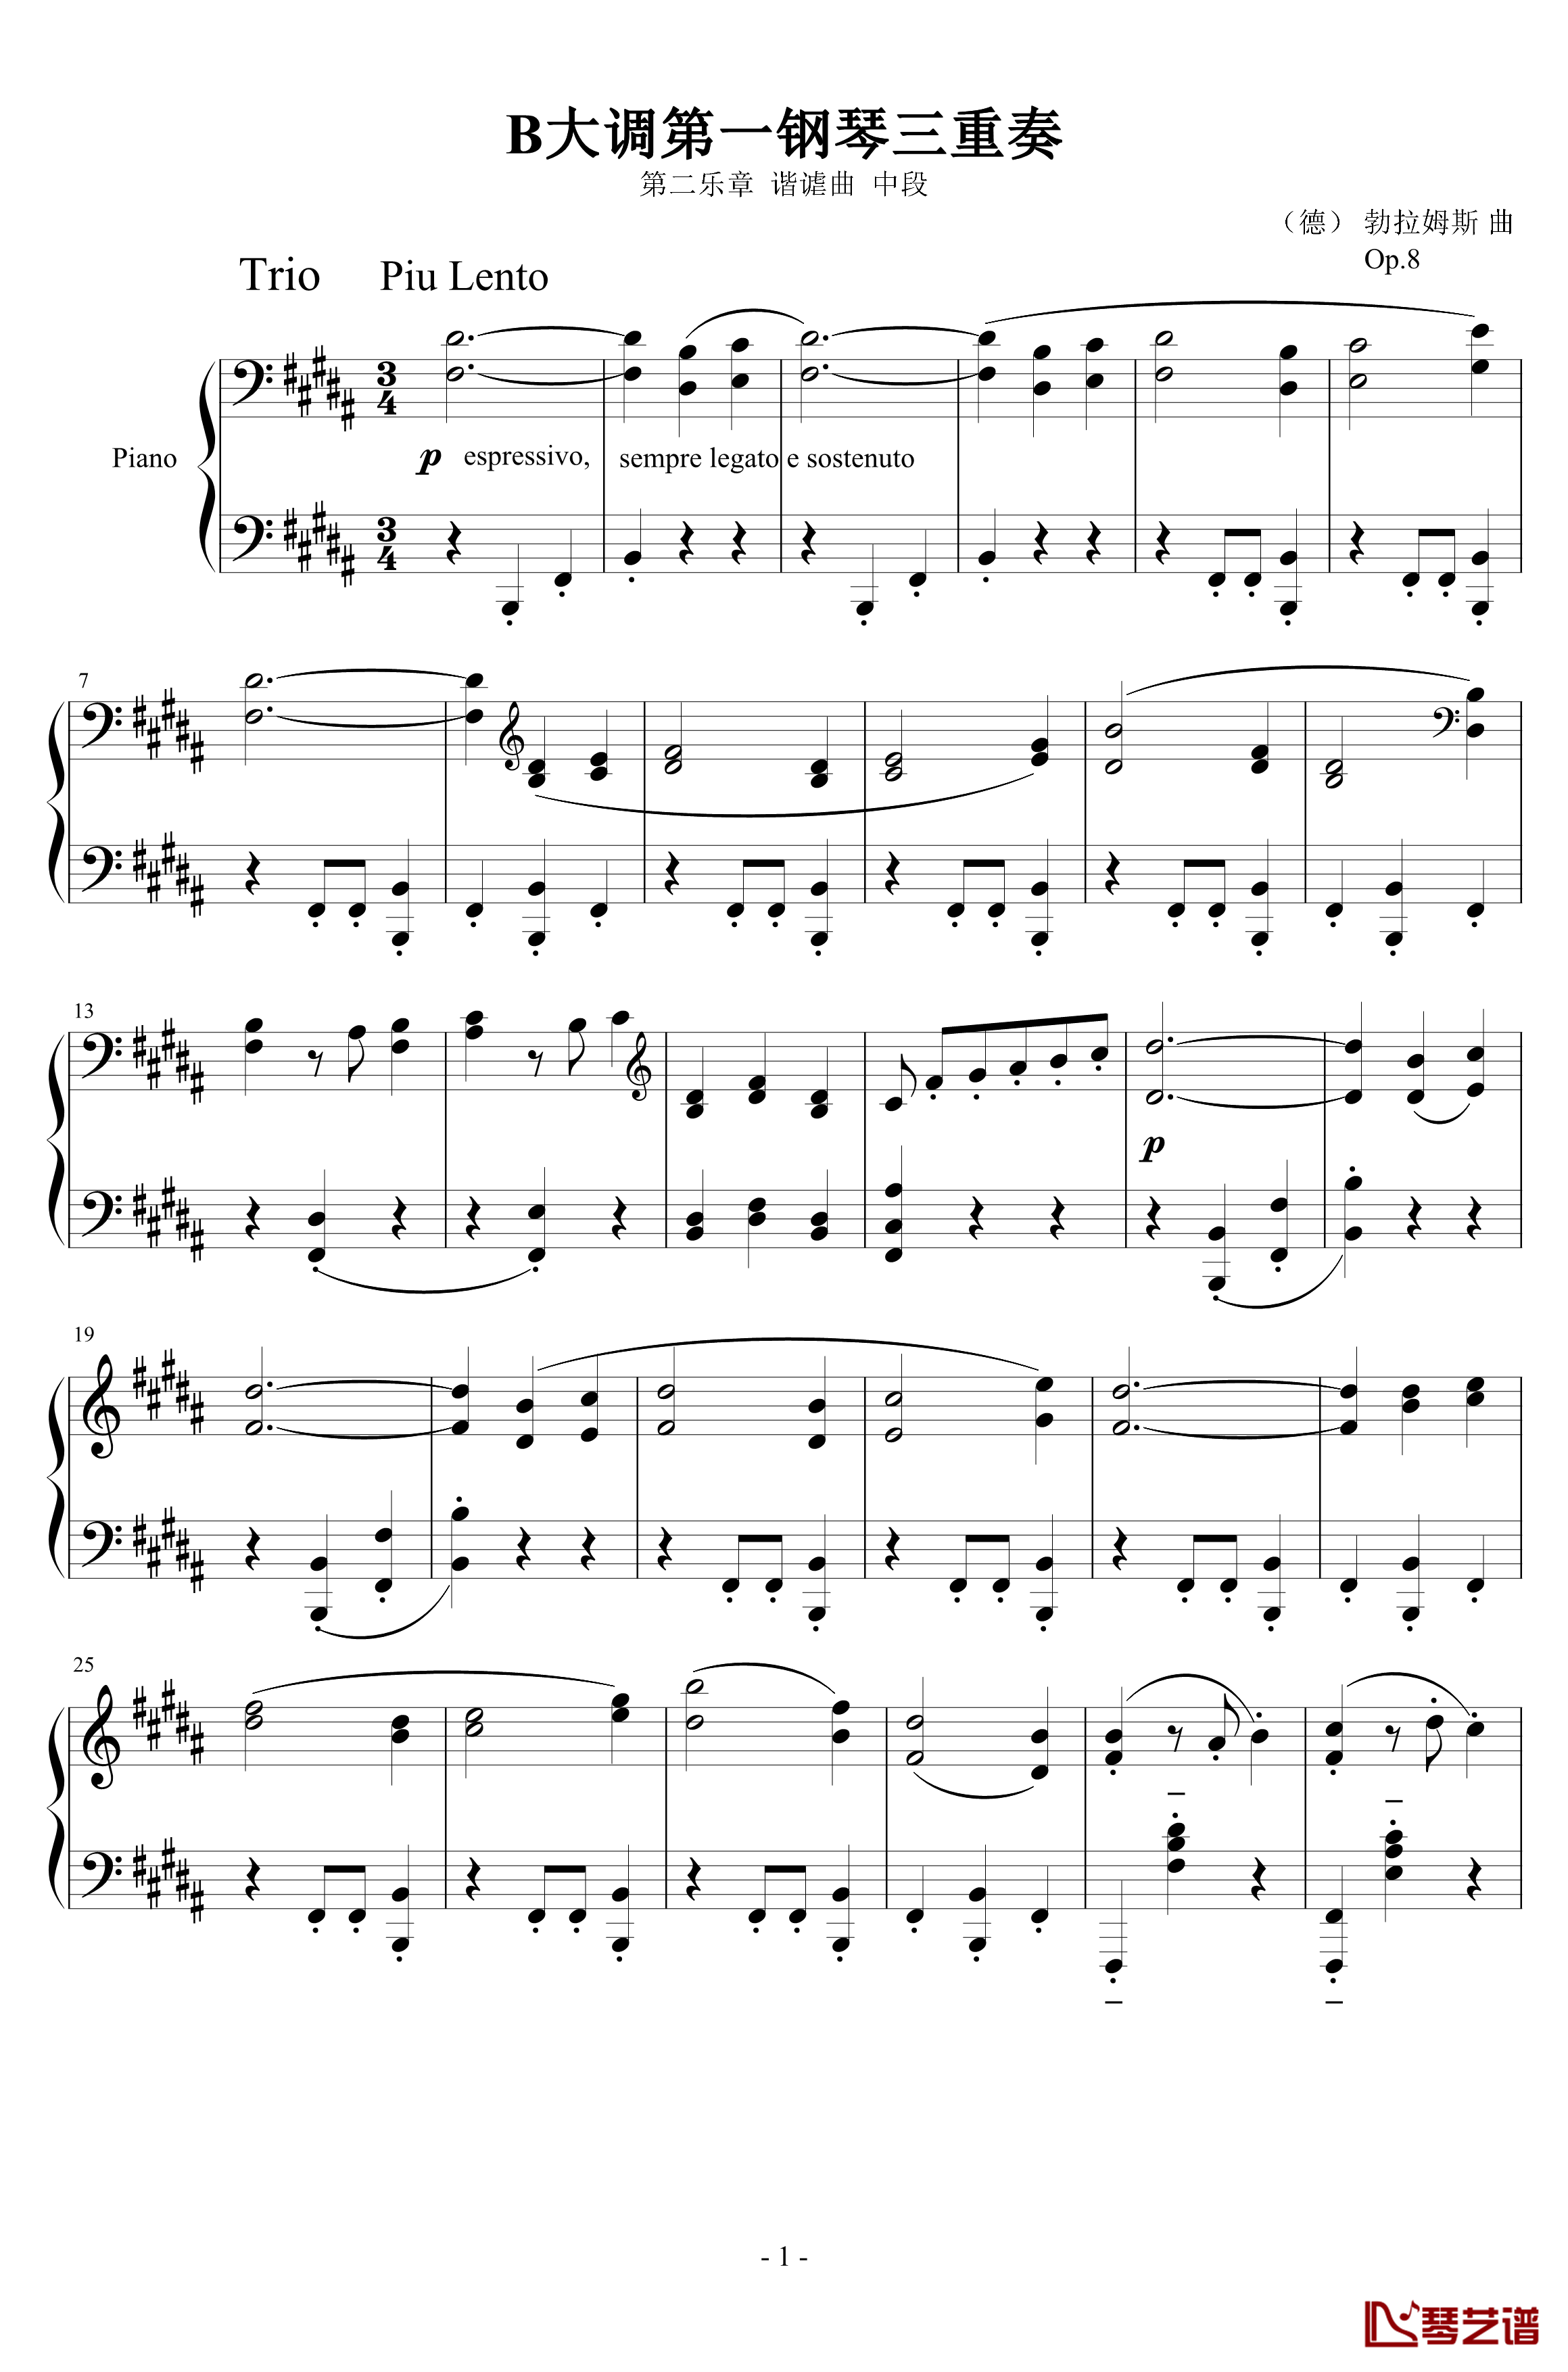 B大调第一钢琴三重奏钢琴谱-Op.8-第二乐章-谐谑曲-中段-勃拉姆斯1